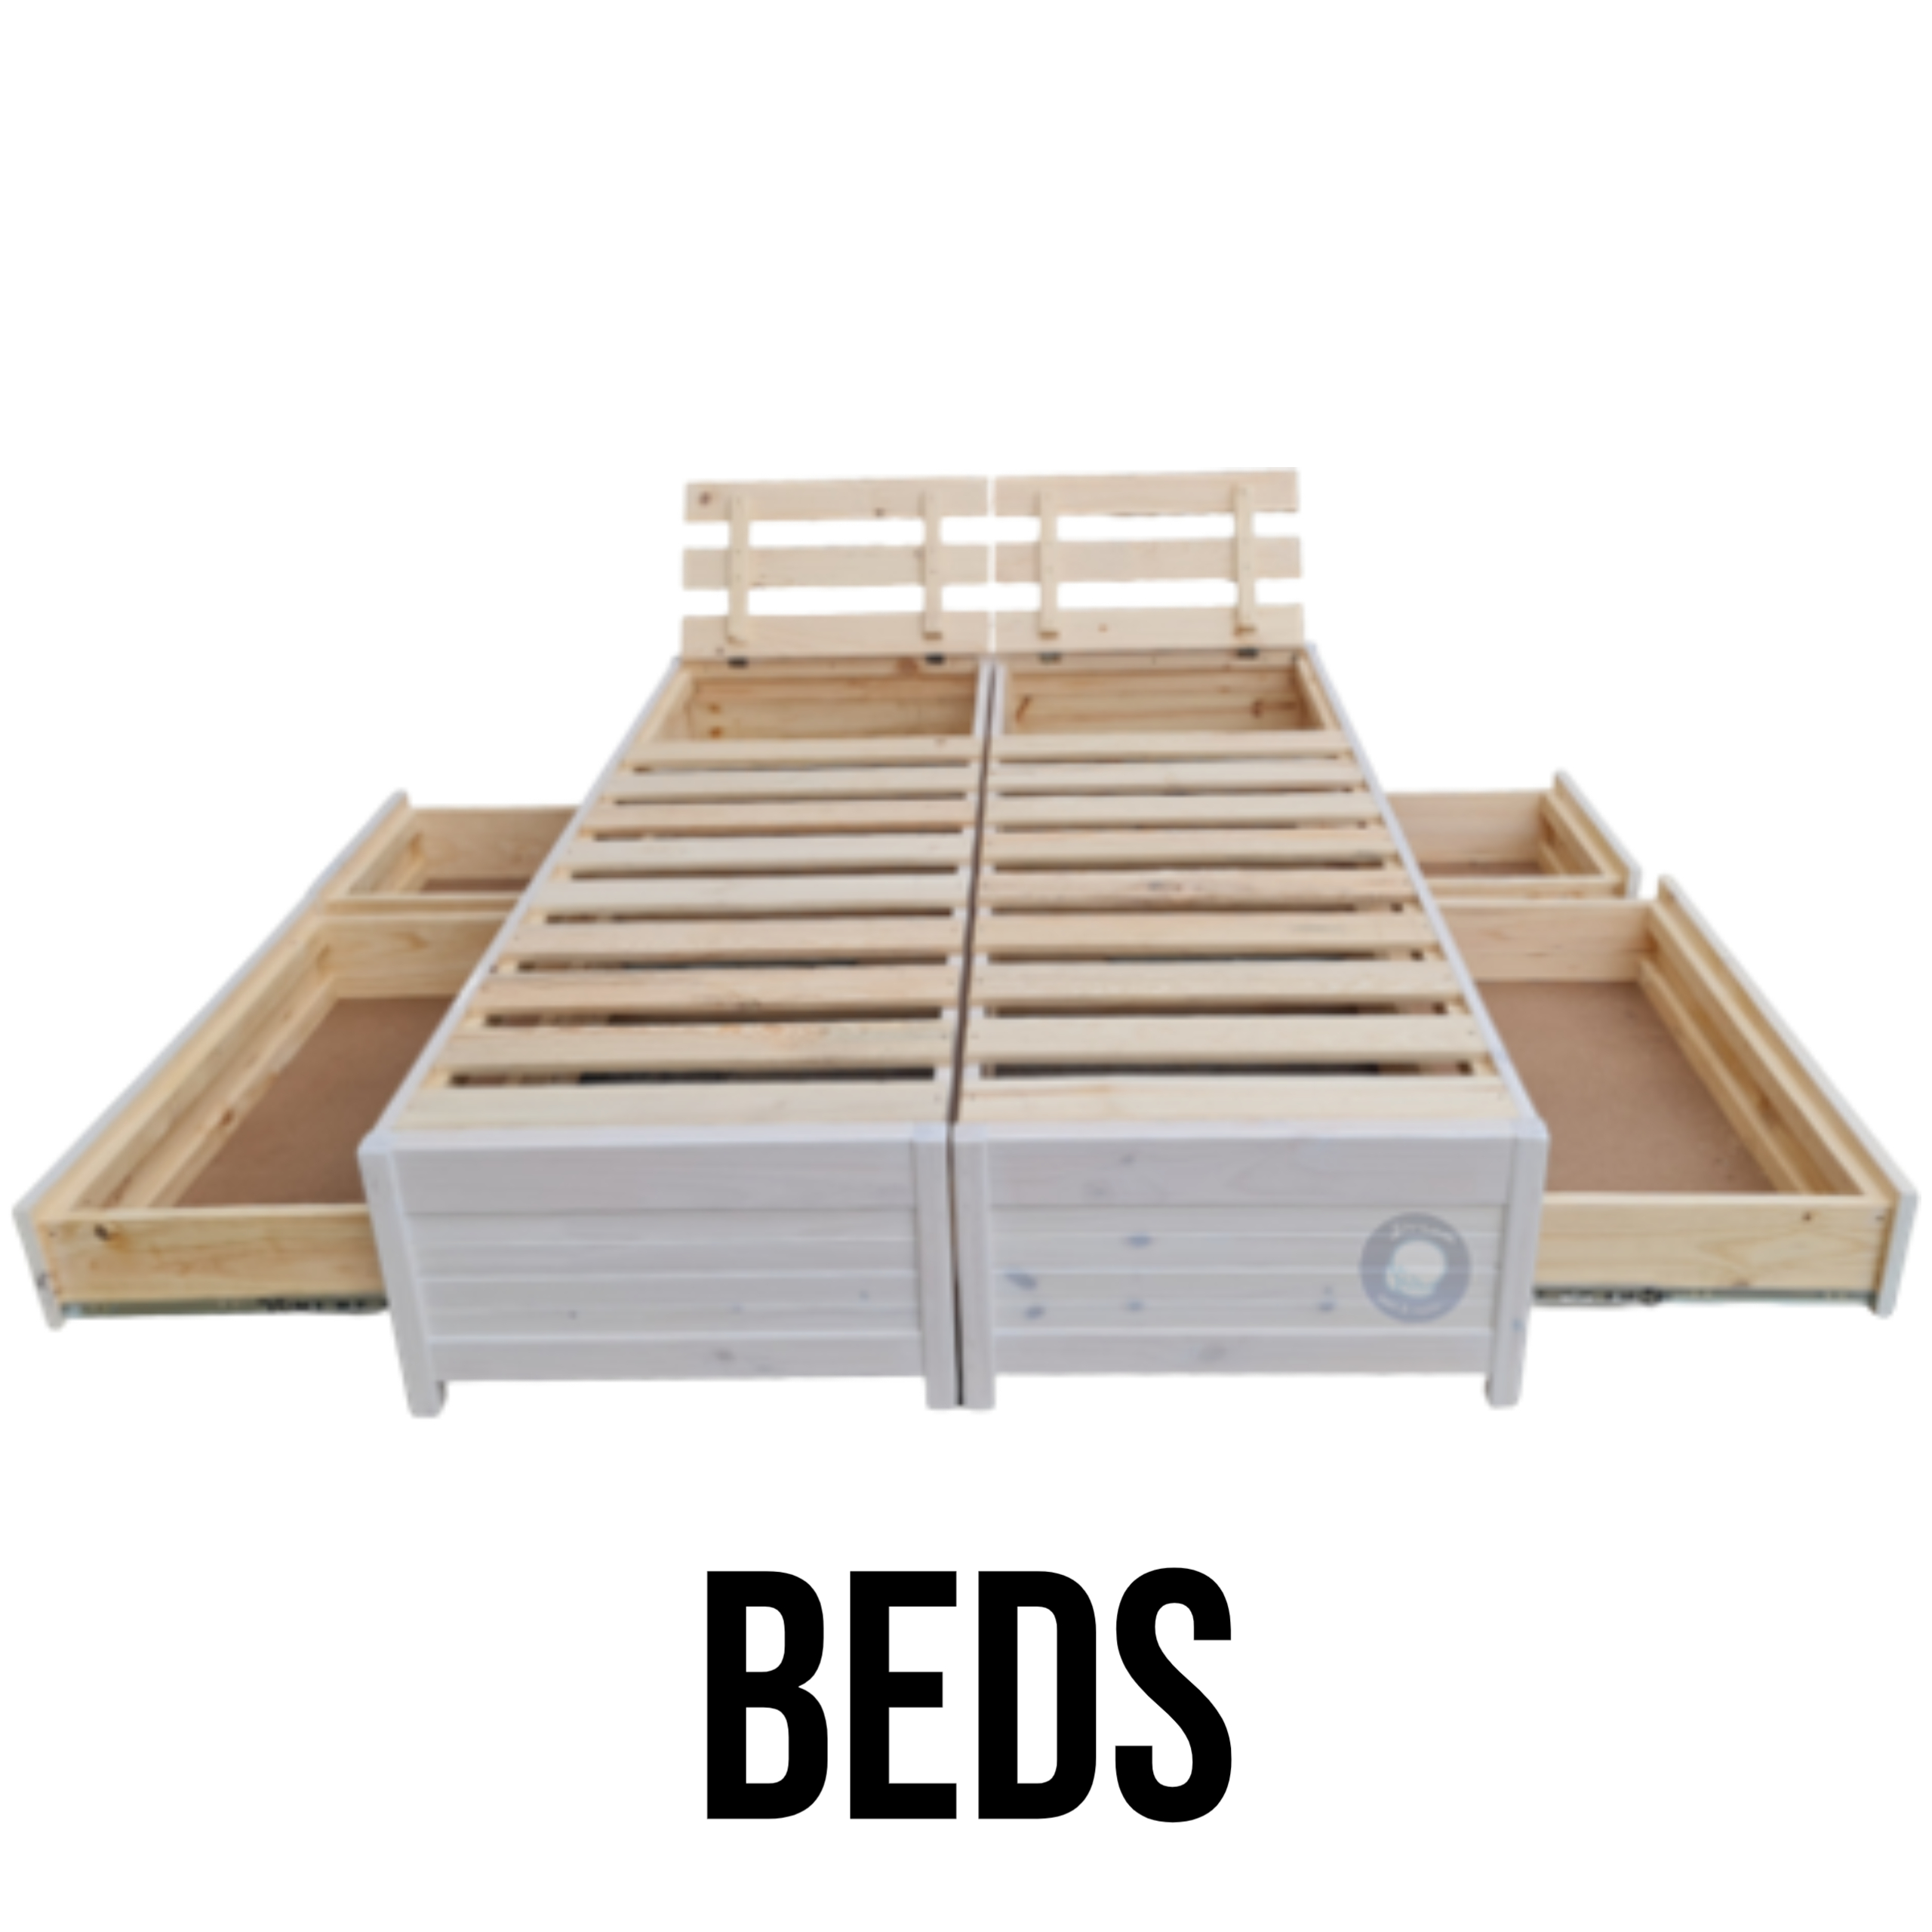 Base Beds